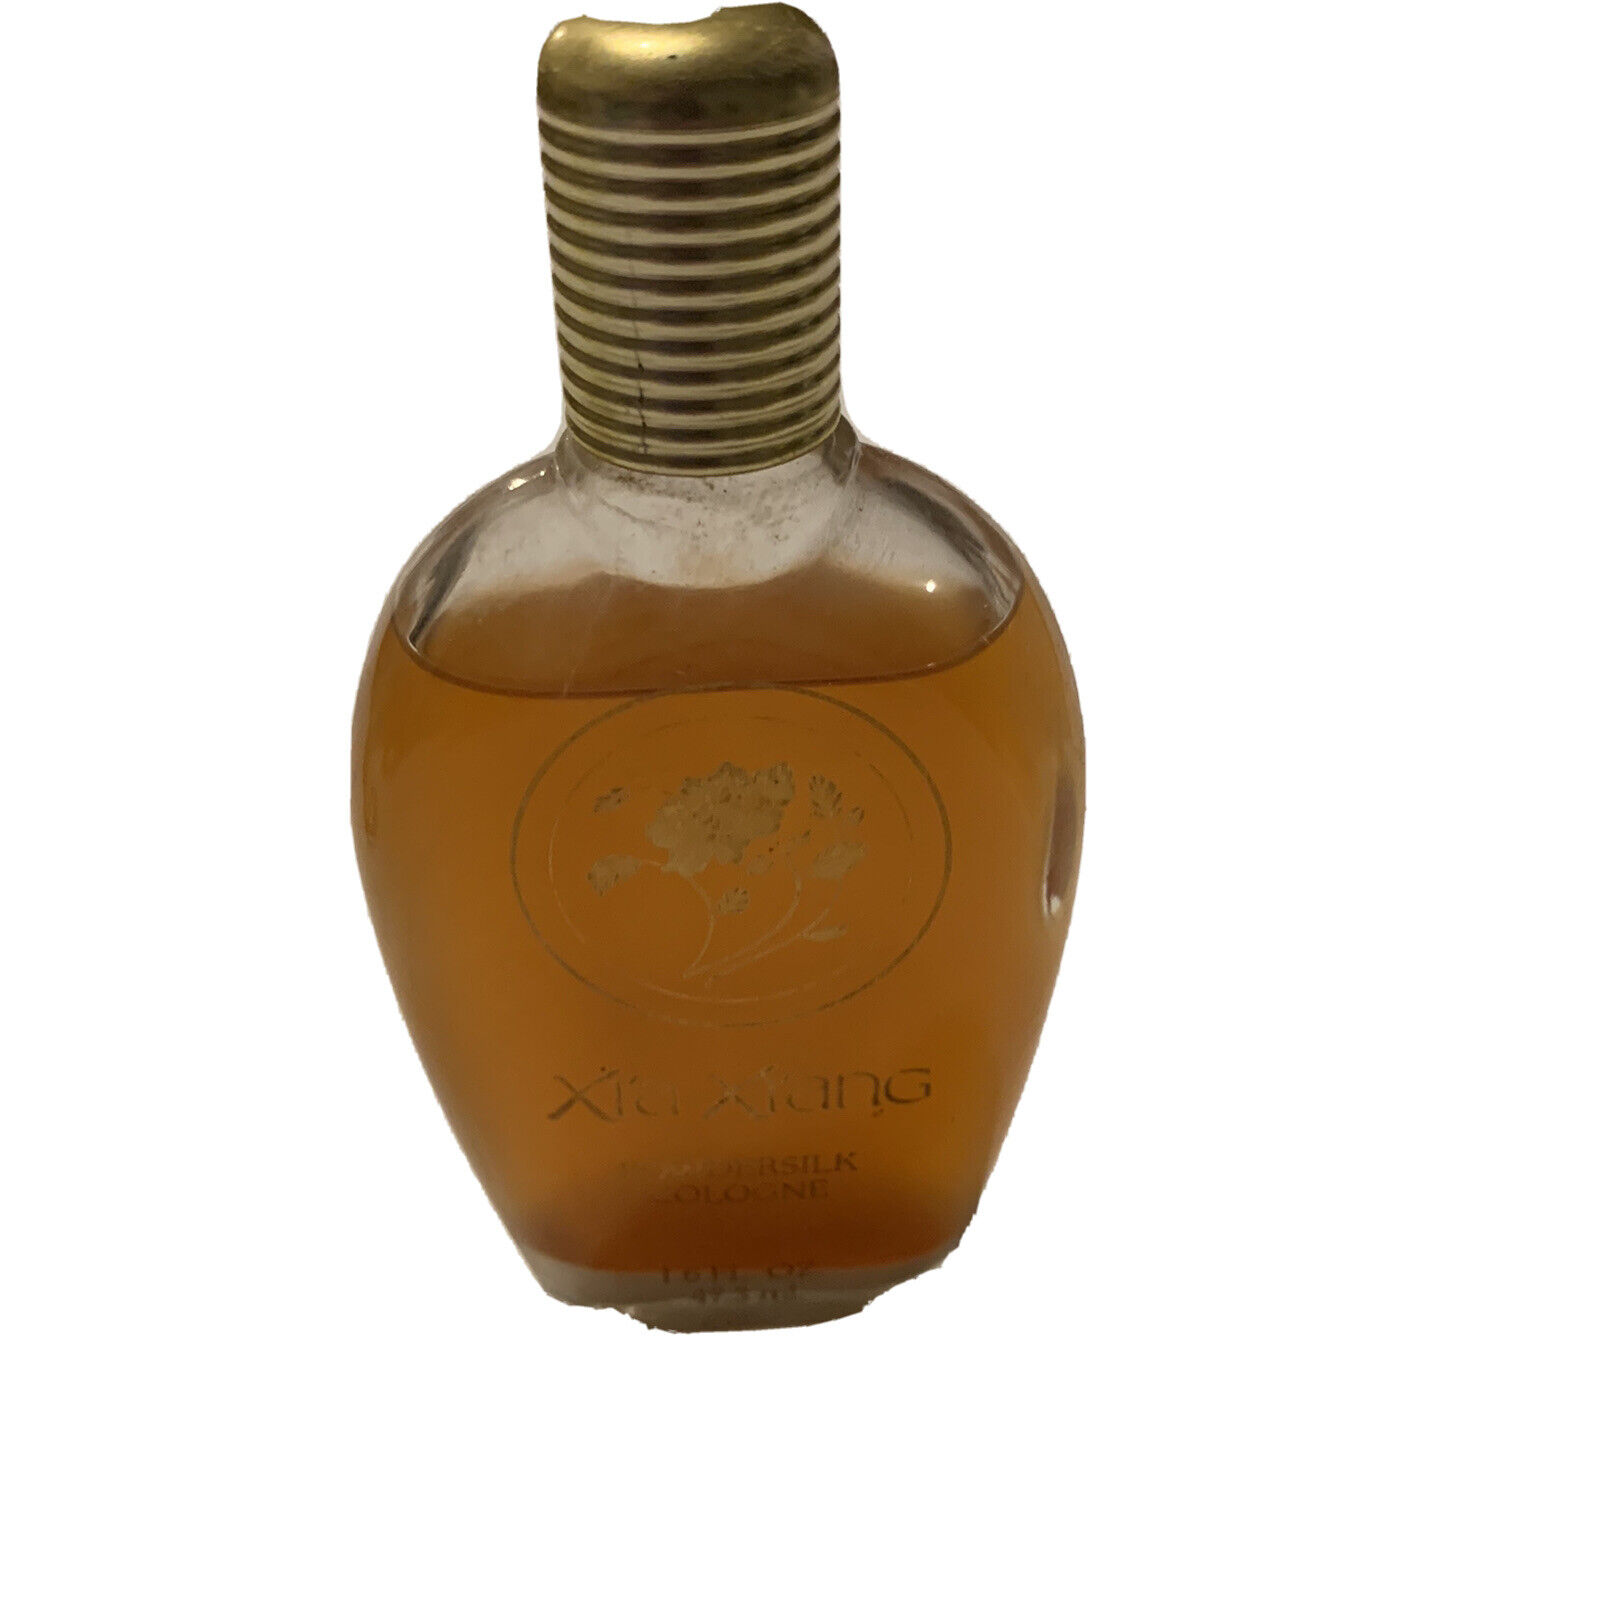 Vintage Xia Xiang Revlon Powdersilk Cologne Splash Partial Bottle No Box 1.6 oz